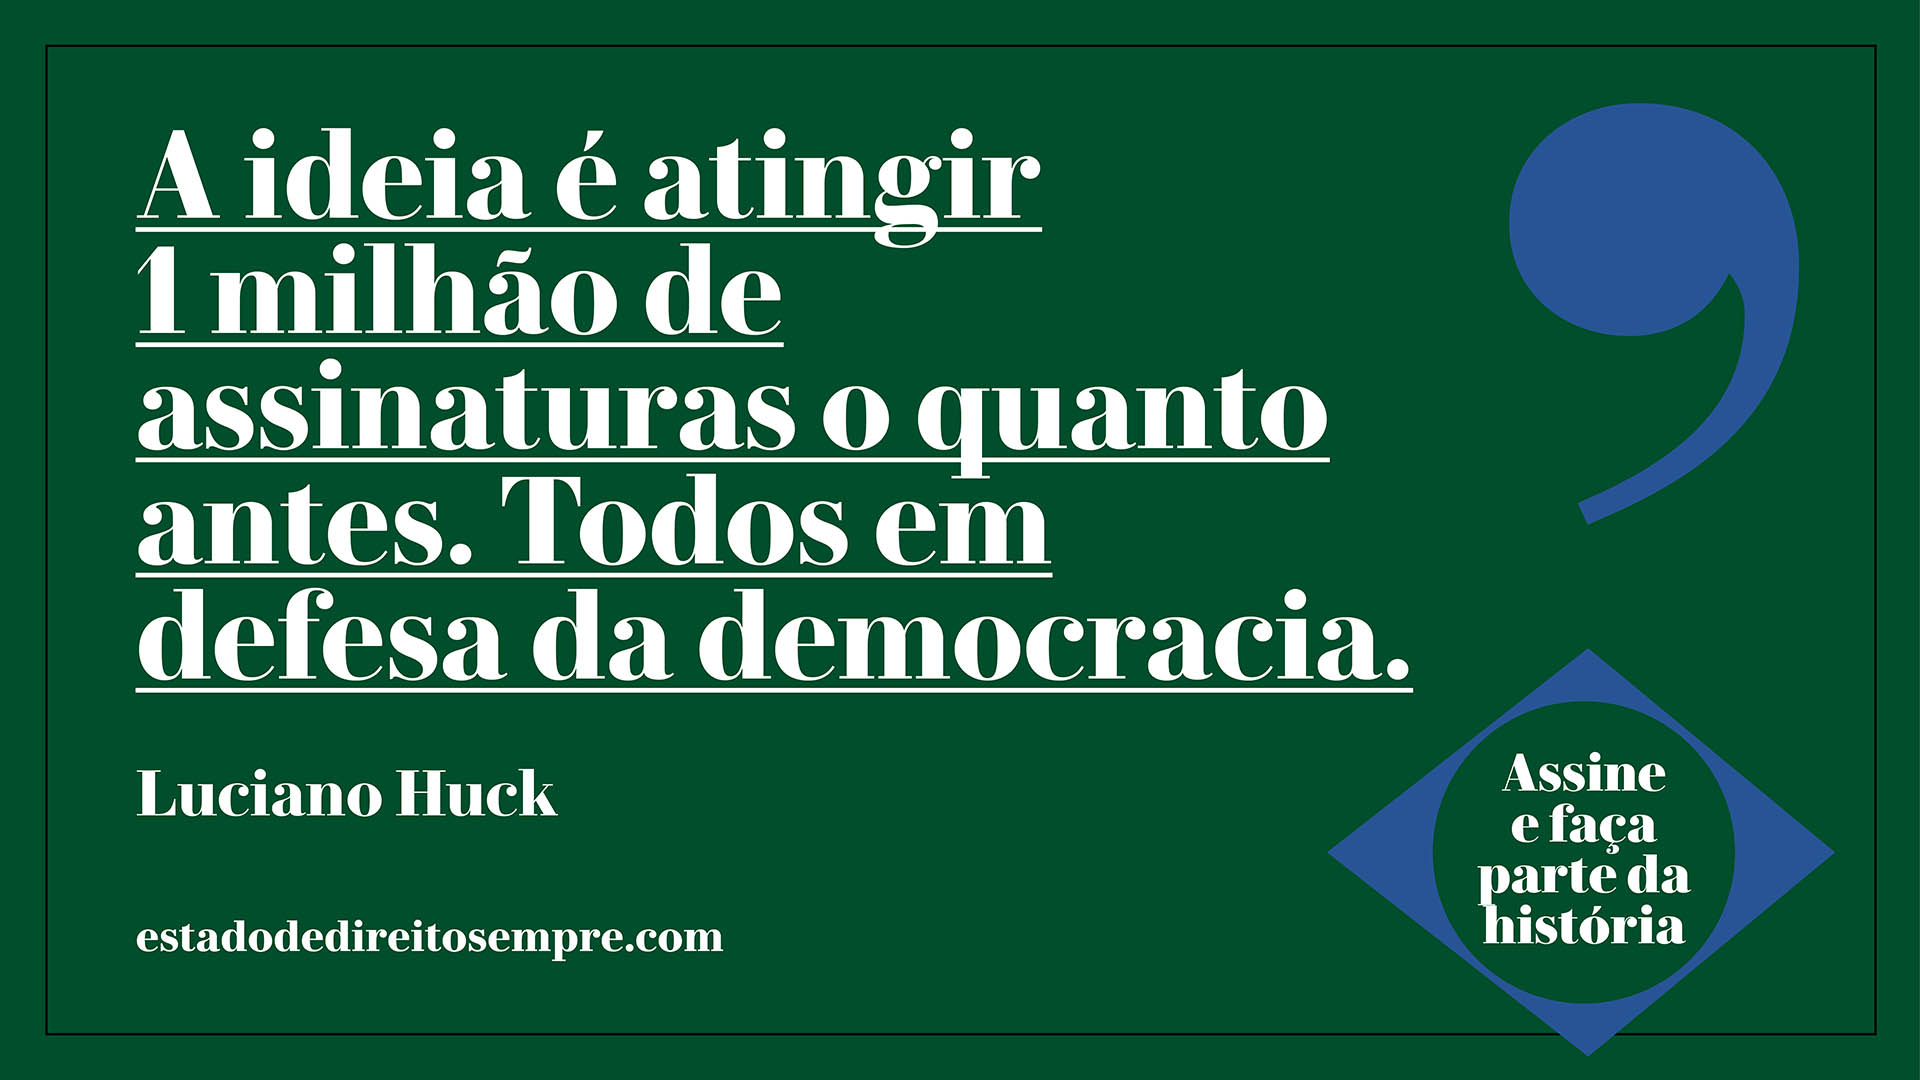 A ideia é atingir 1 milhão de assinaturas o quanto antes. Todos em defesa da democracia. Luciano Huck